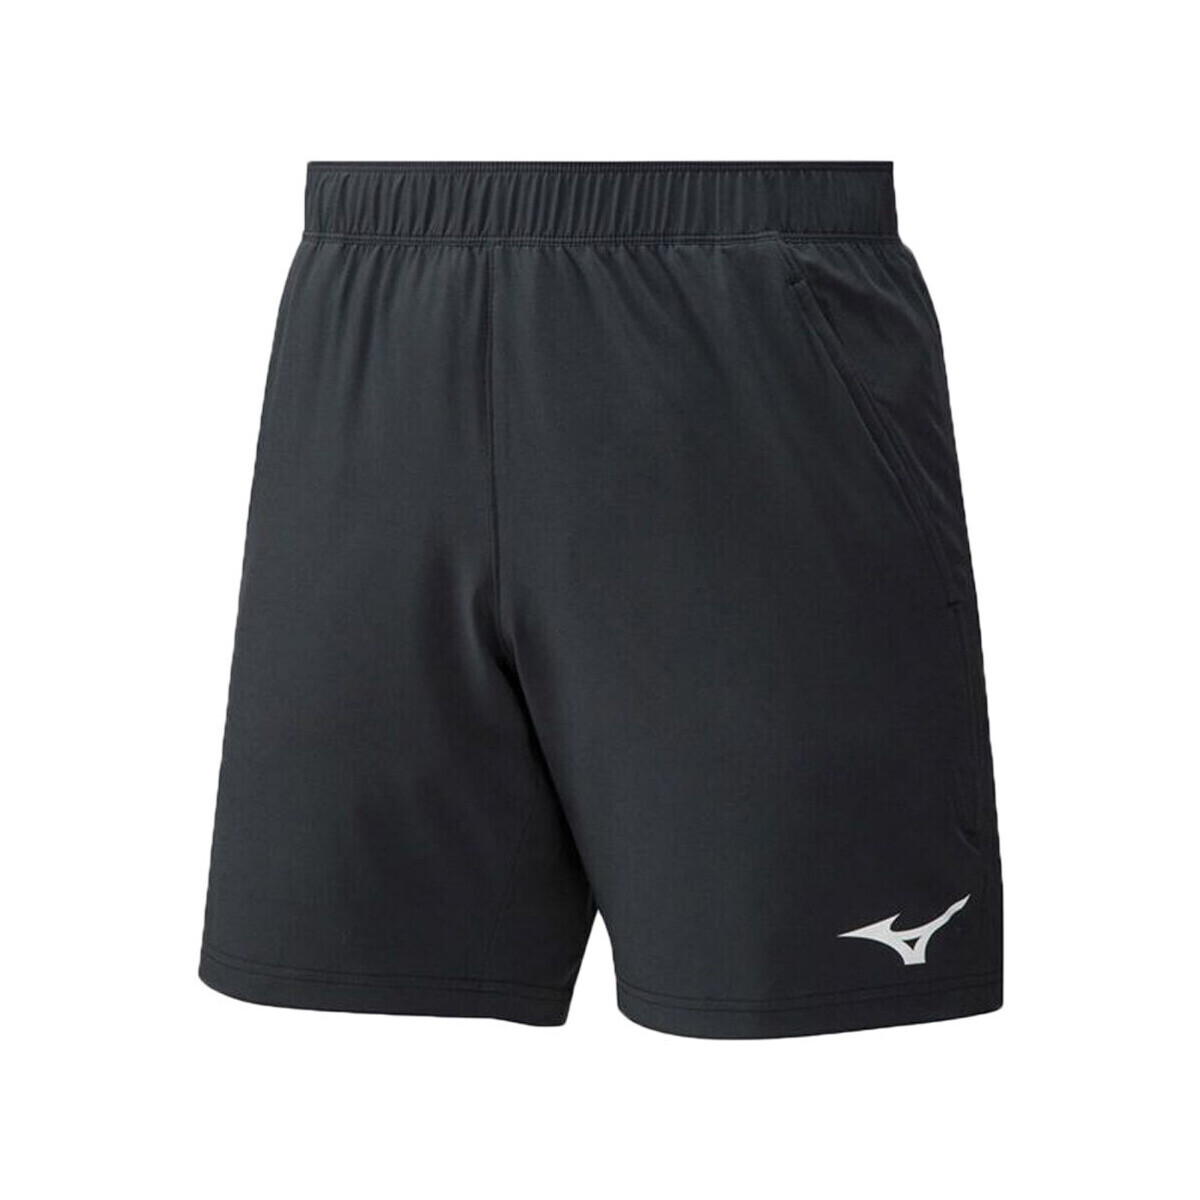 textil Hombre Shorts / Bermudas Mizuno  Negro